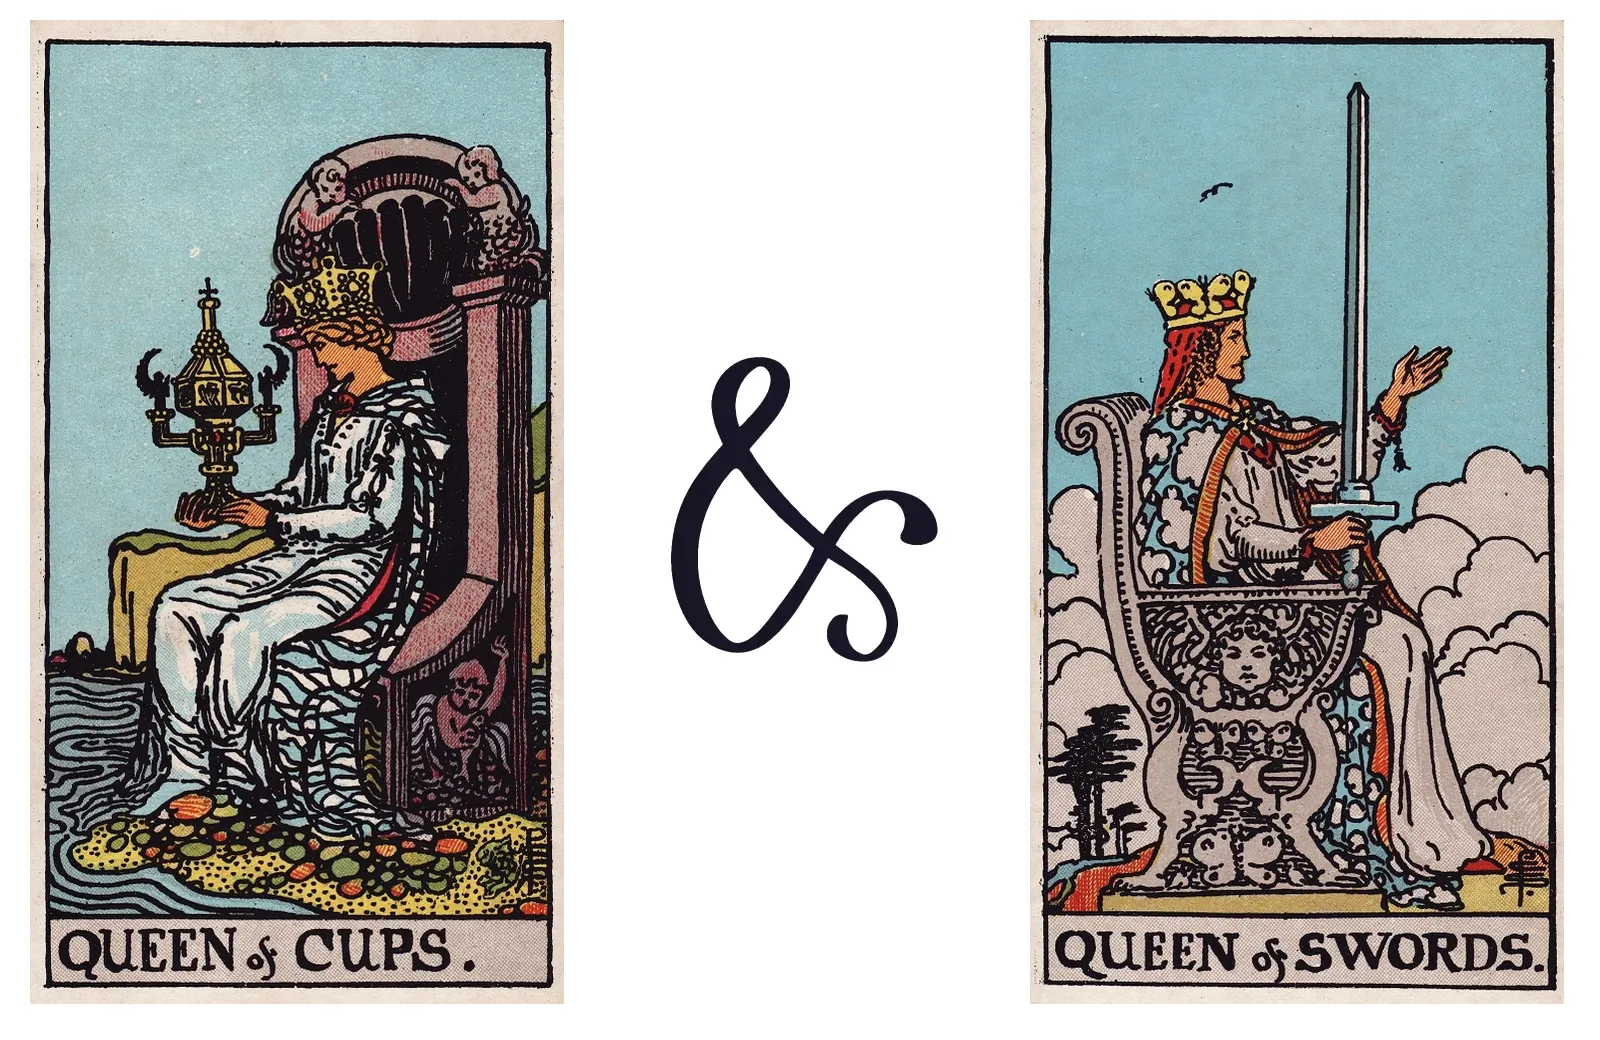 Queen of Cups and Queen of Swords